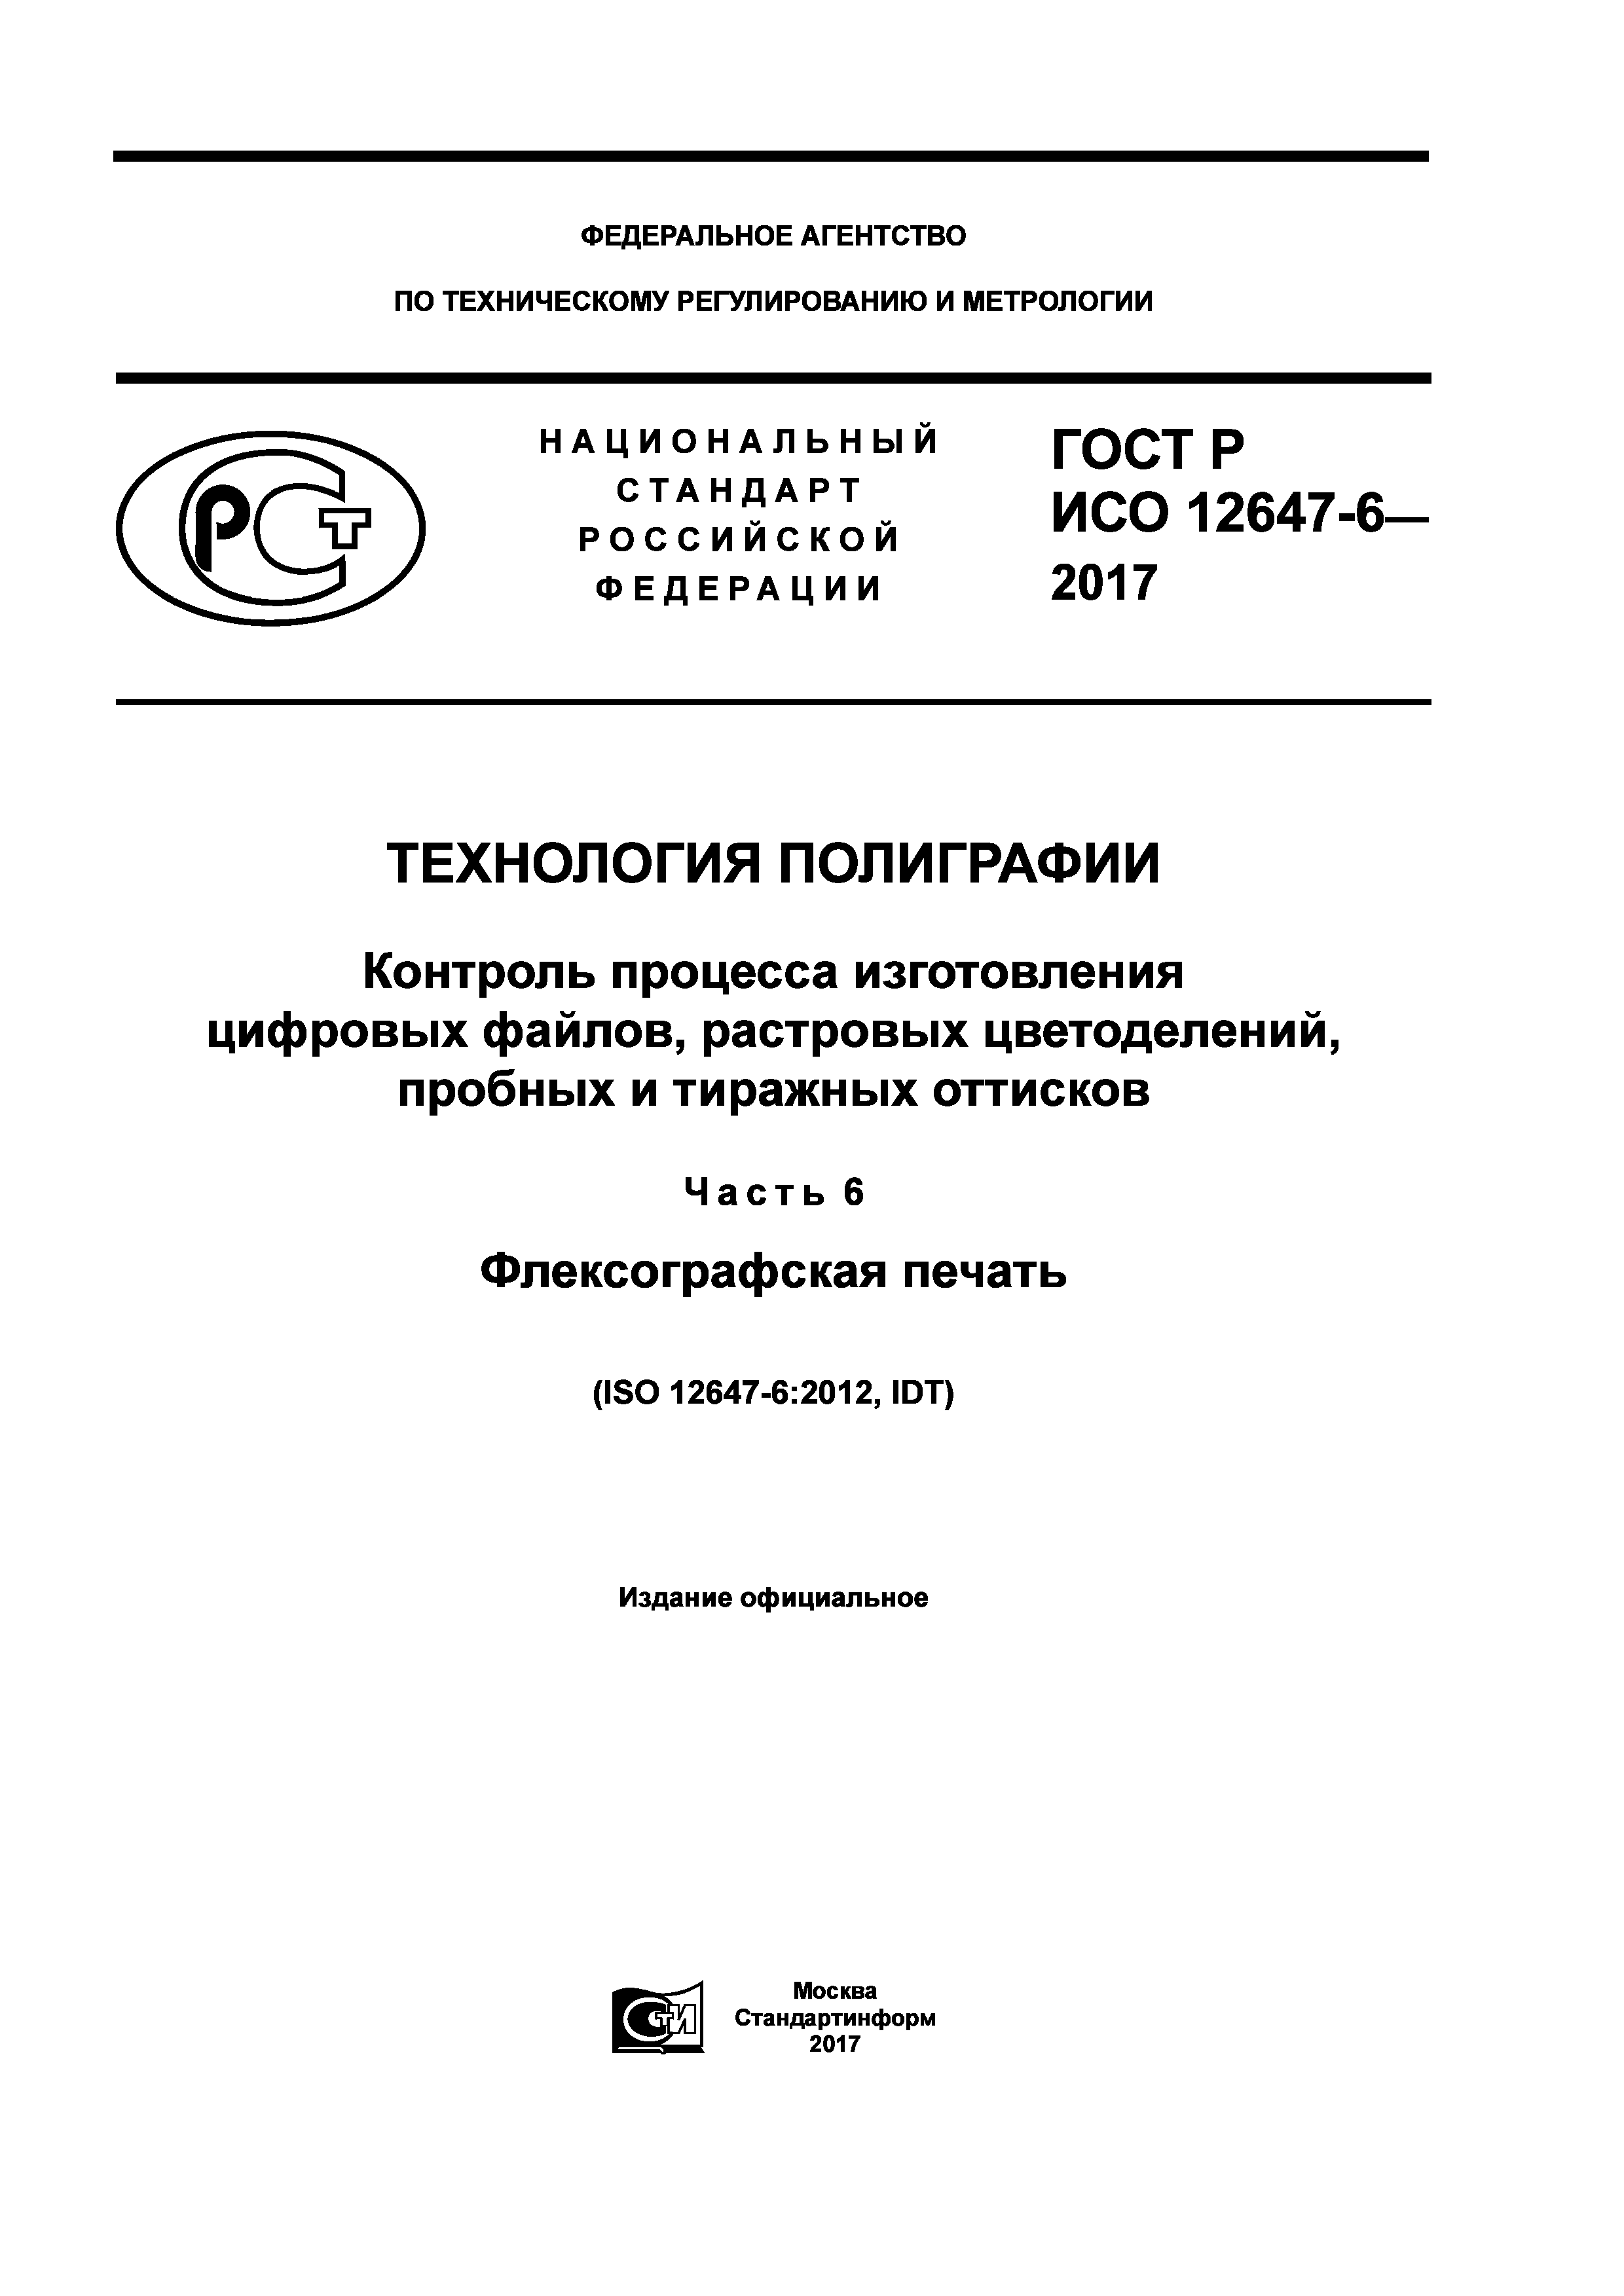 ГОСТ Р ИСО 12647-6-2017